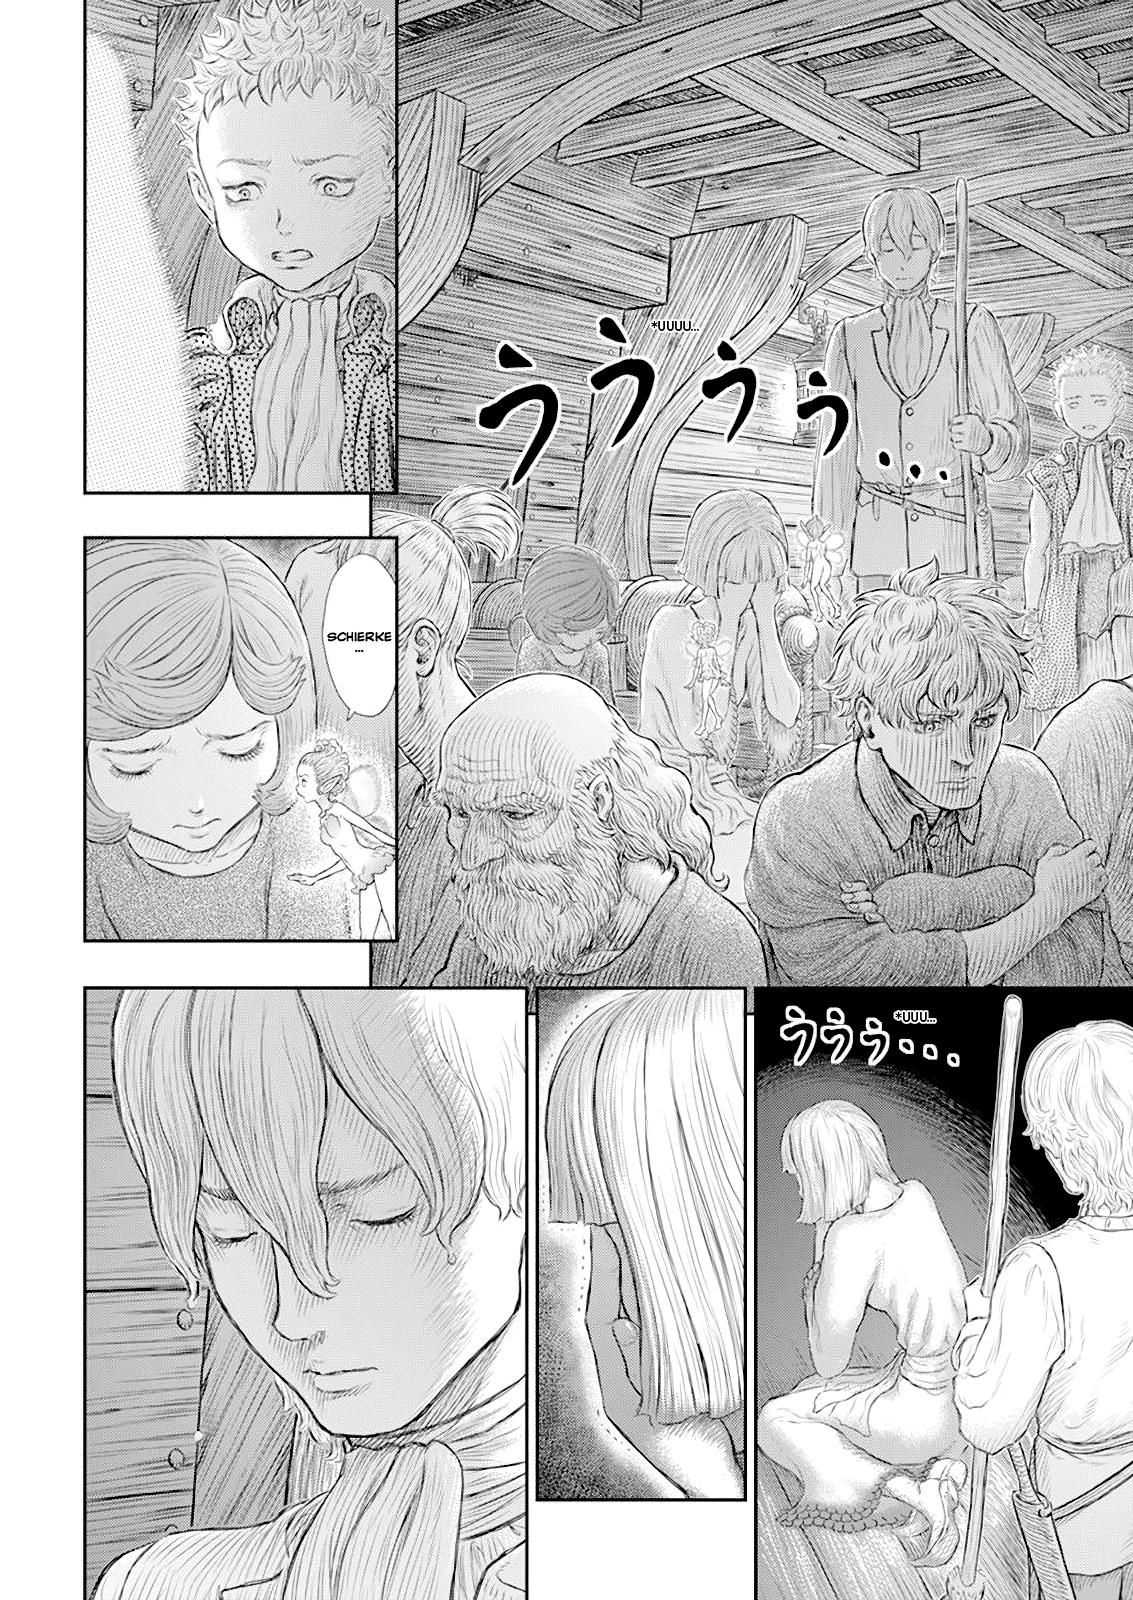 Berserk Manga Chapter 370 image 05